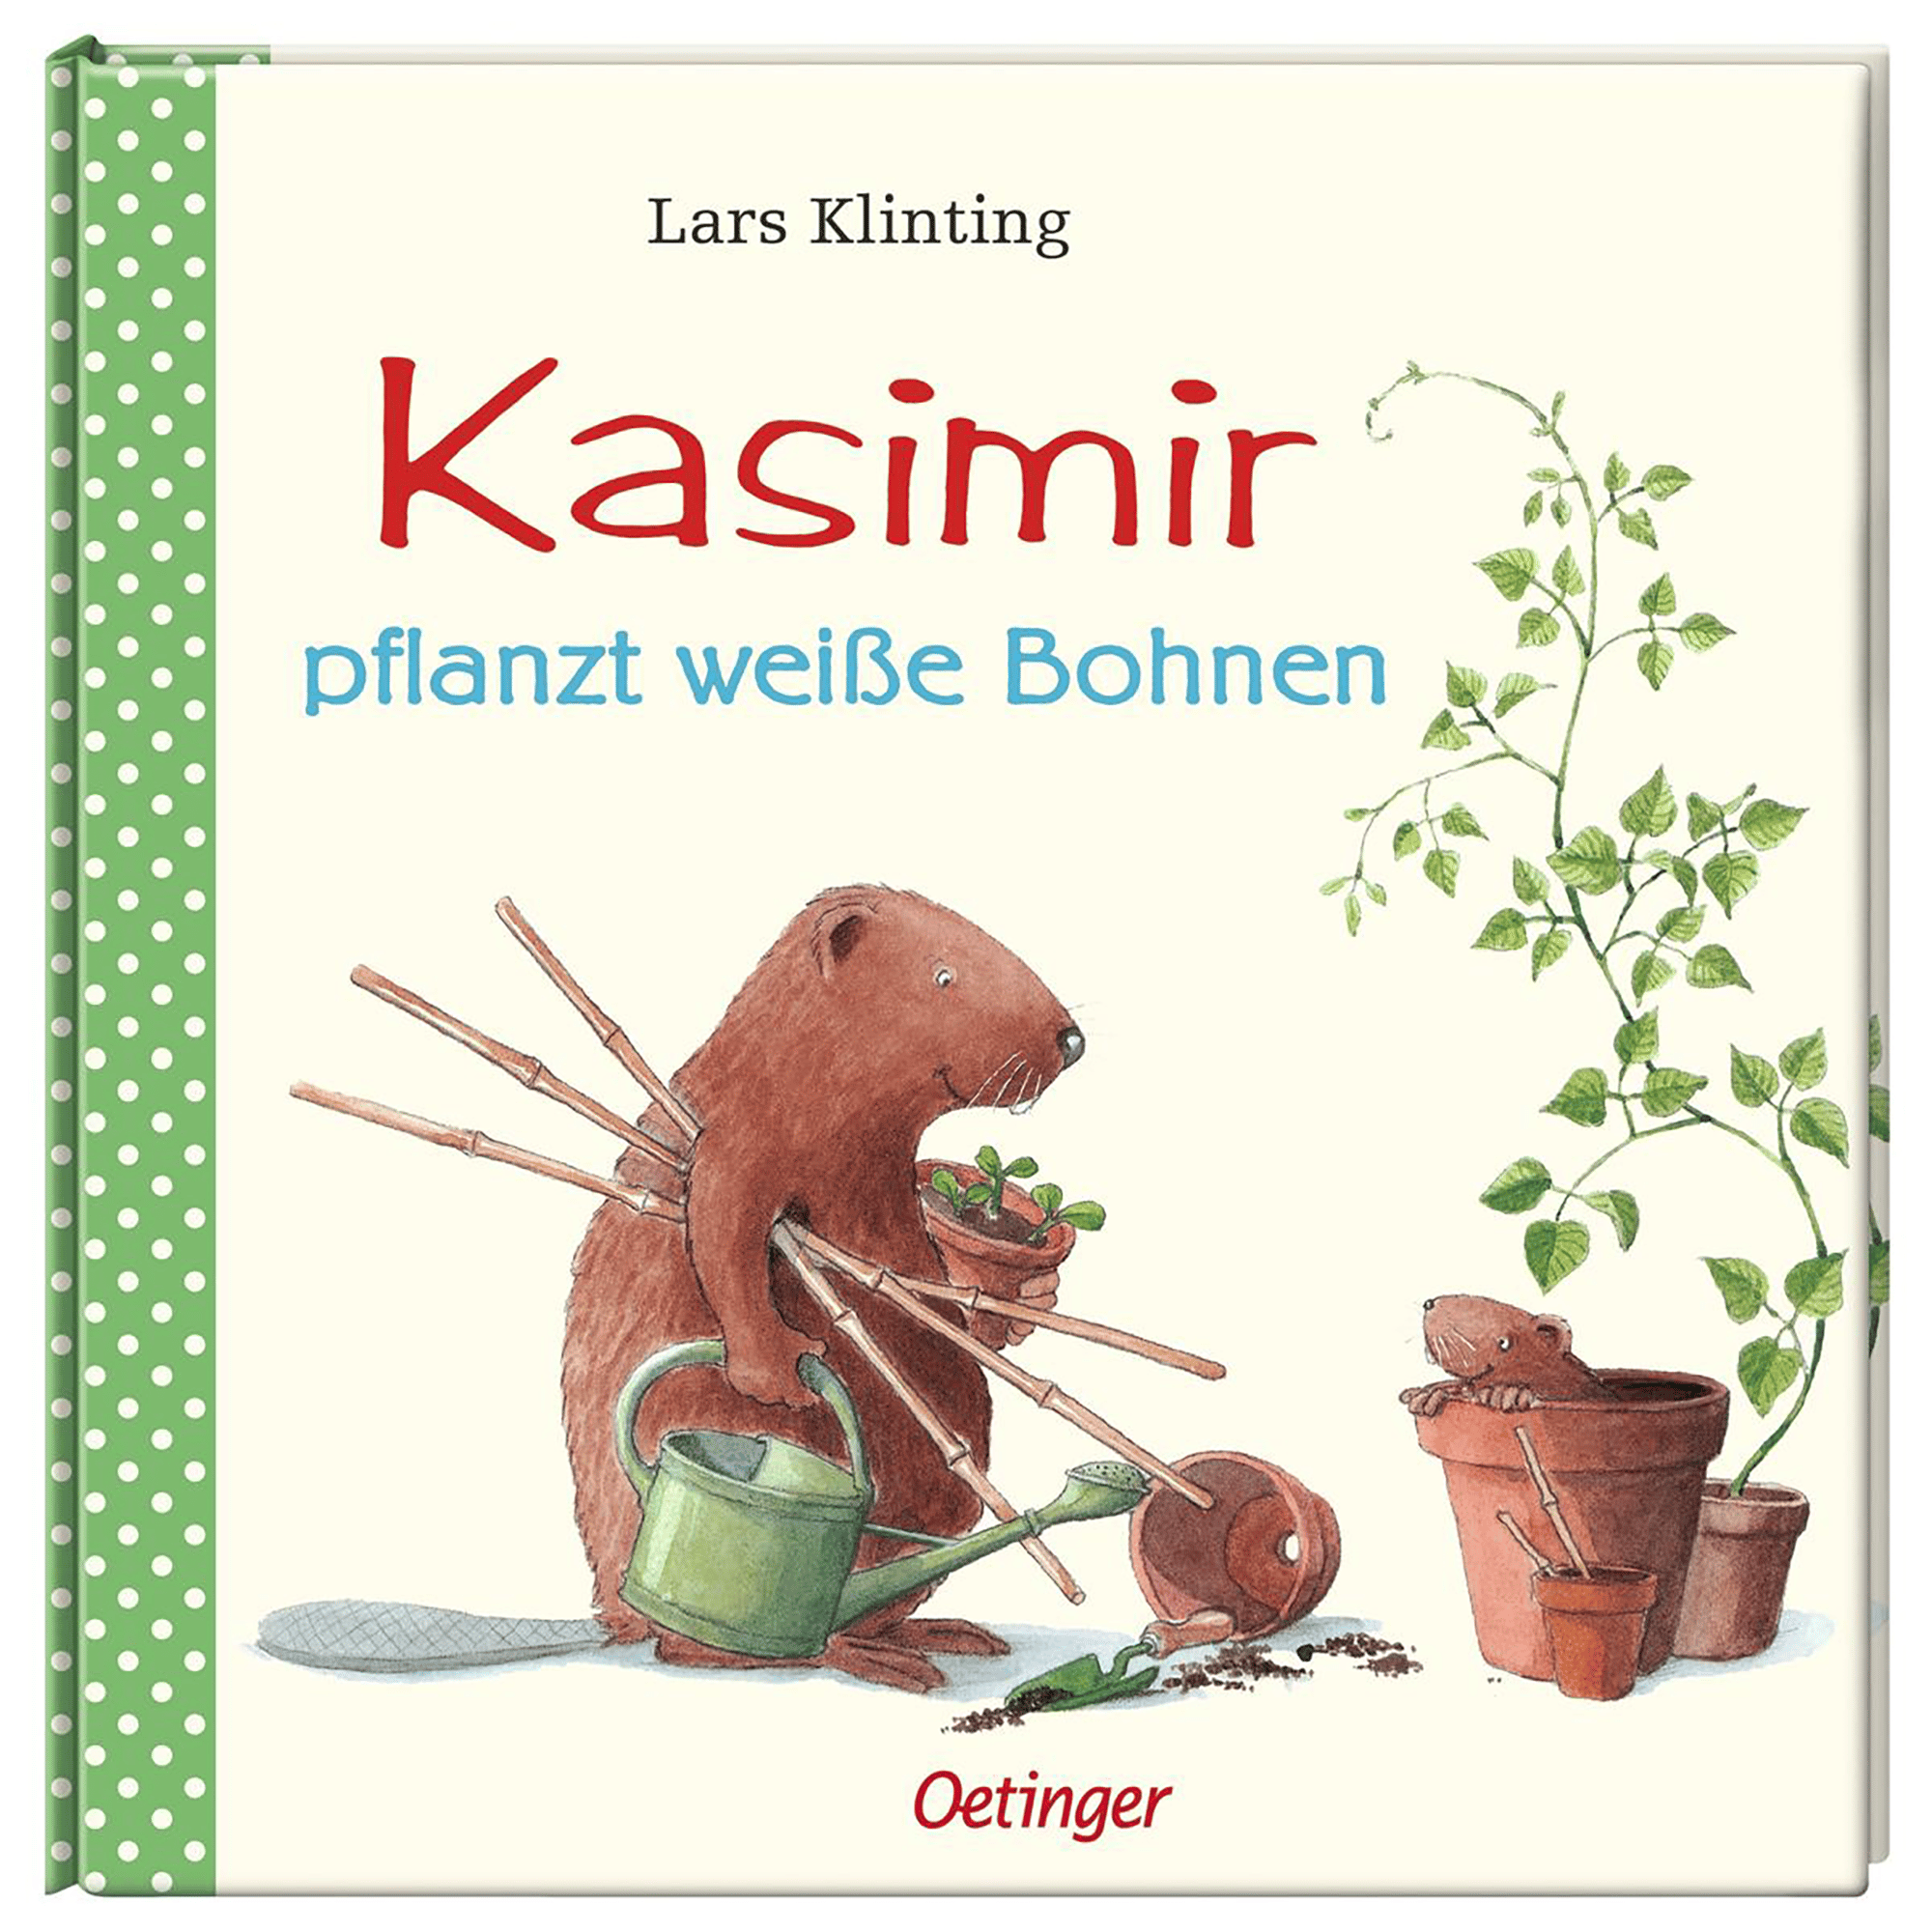 Kasimir pflanzt weiße Bohnen OETINGER 2000583390008 1